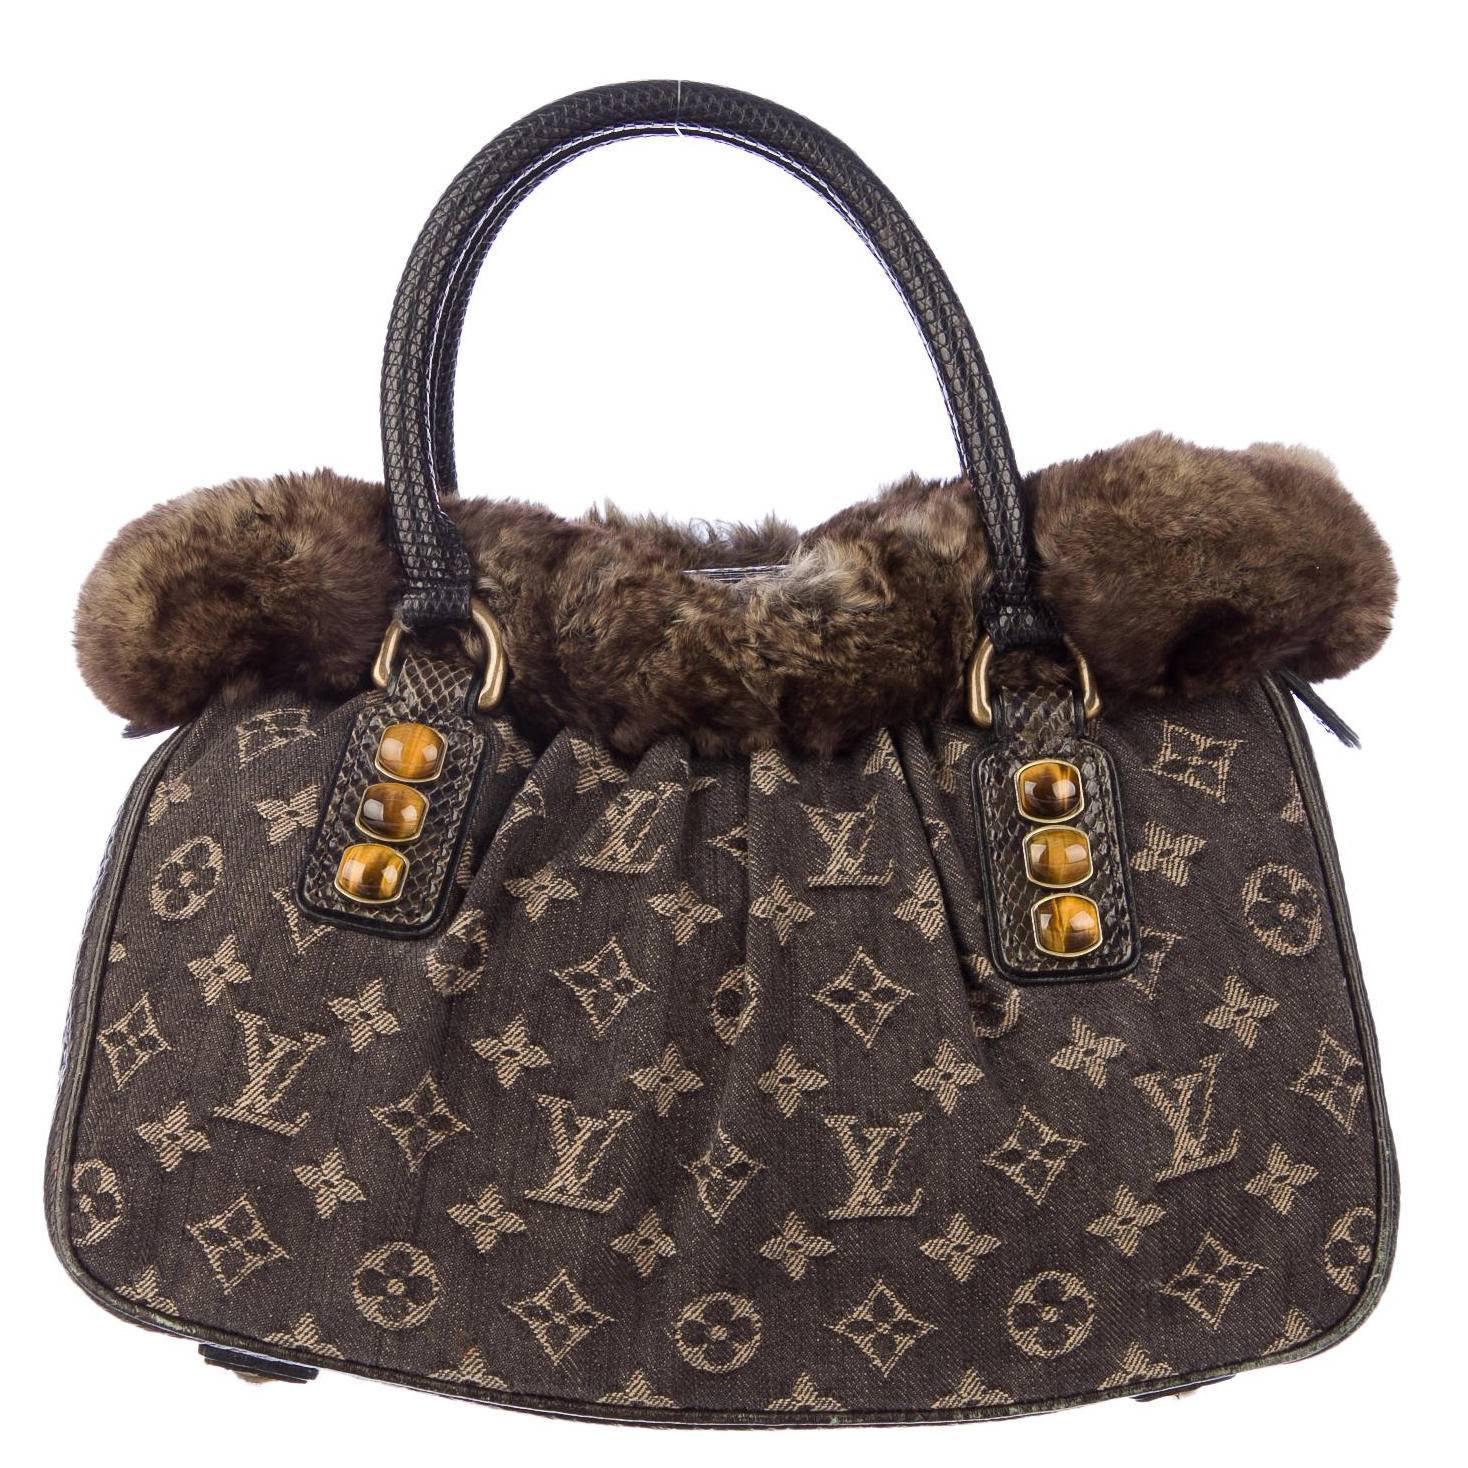 Louis Vuitton Limited Edition Brown Monogram Fur Top Handle Evening Satchel Bag